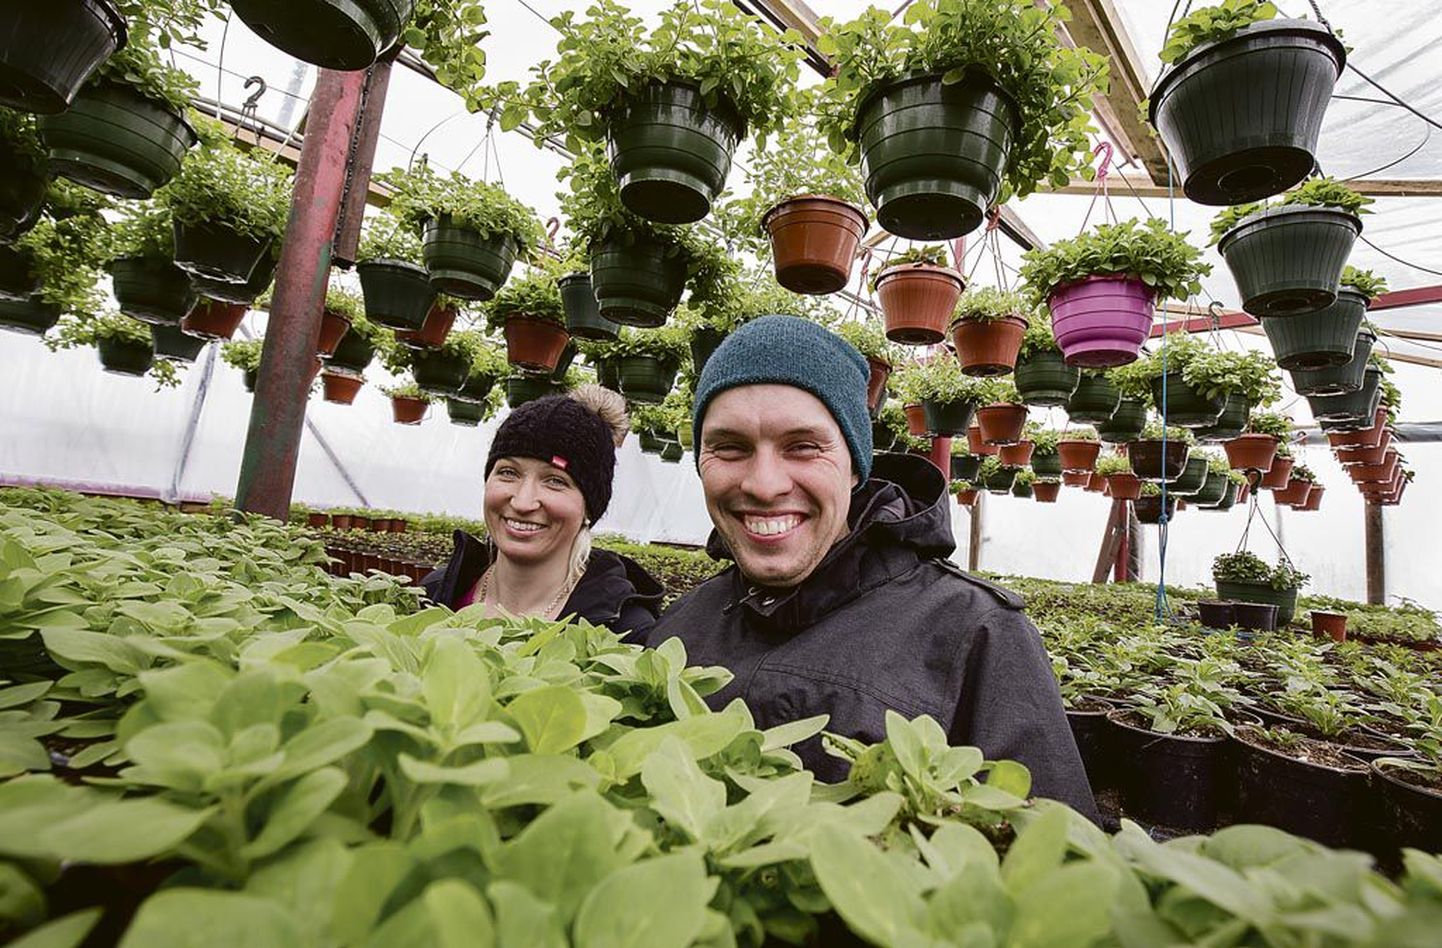 Lillevälja aiandustalu pererahvas, Kristel Sepp ja Margus Kajastu on pühendunud maaelule ja naudivad seda.